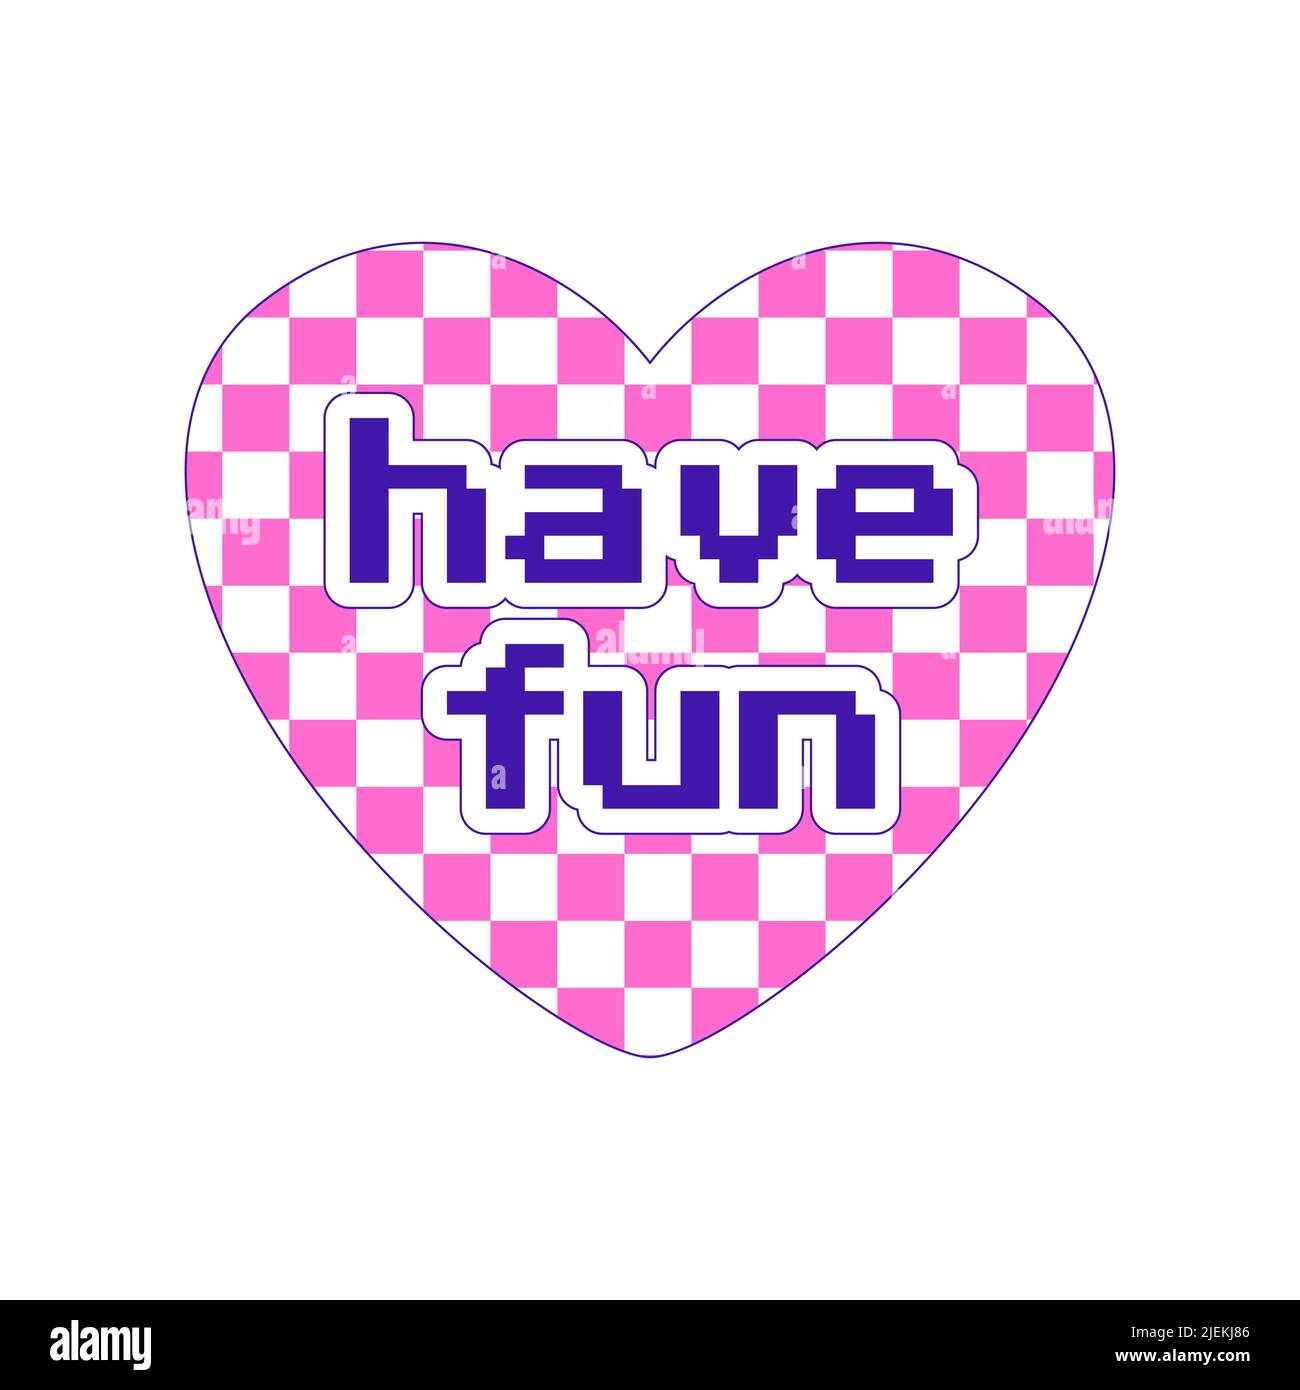 Adesivo in stile Y2K. Un adesivo a forma di cuore con un motivo scacchi e le parole Buon divertimento. Font retro pixel. Nostalgia per il 2000s. Semplice vecto piatto Illustrazione Vettoriale